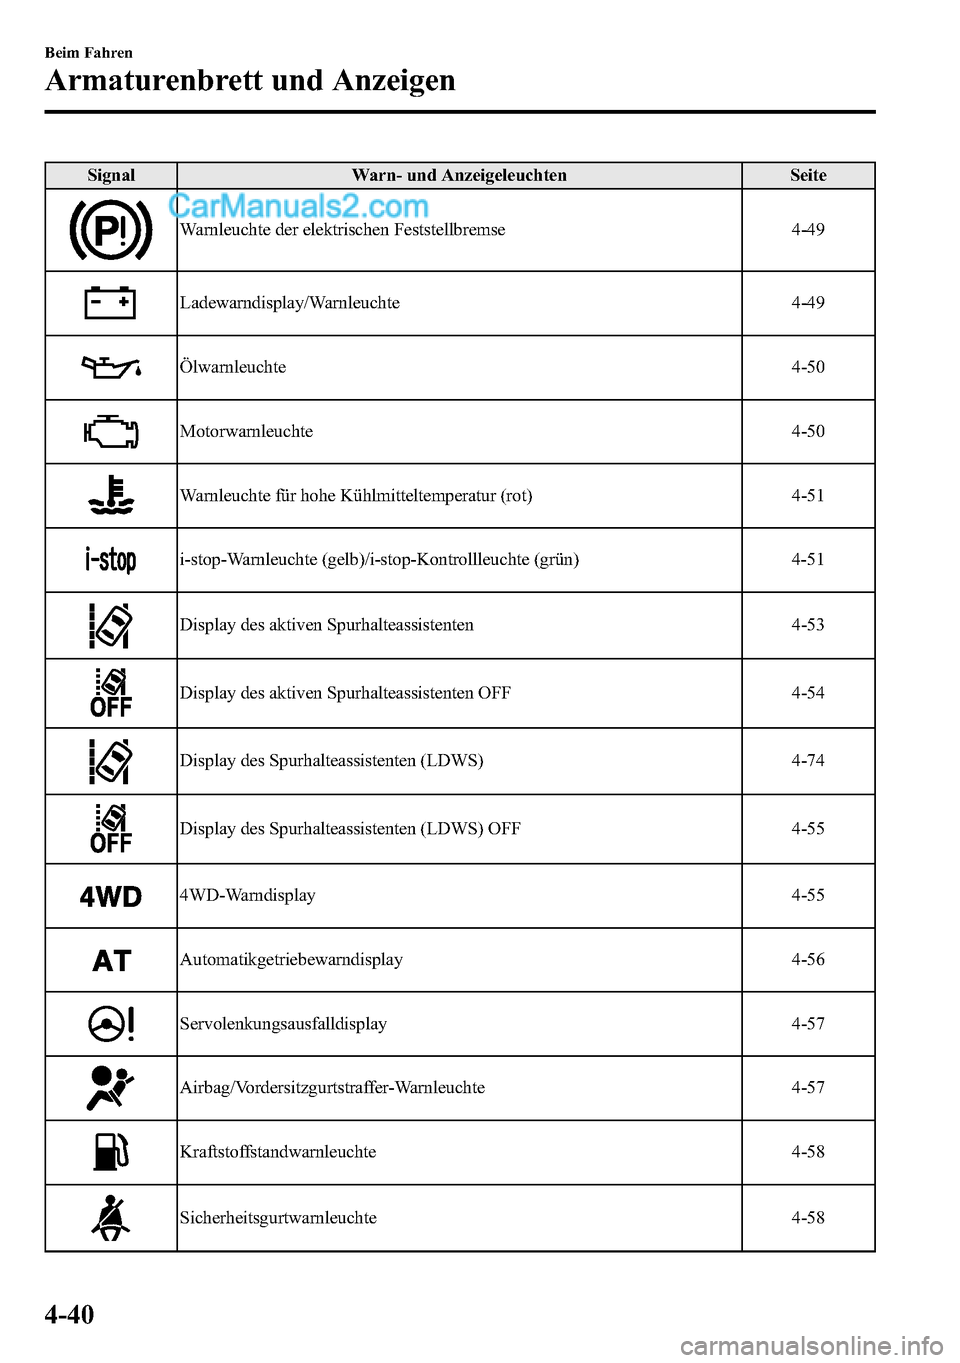 MAZDA MODEL CX-5 2016  Betriebsanleitung (in German) Signal Warn- und Anzeigeleuchten Seite
Warnleuchte der elektrischen Feststellbremse 4-49
Ladewarndisplay/Warnleuchte 4-49
Ölwarnleuchte 4-50
Motorwarnleuchte 4-50
Warnleuchte für hohe Kühlmitteltem